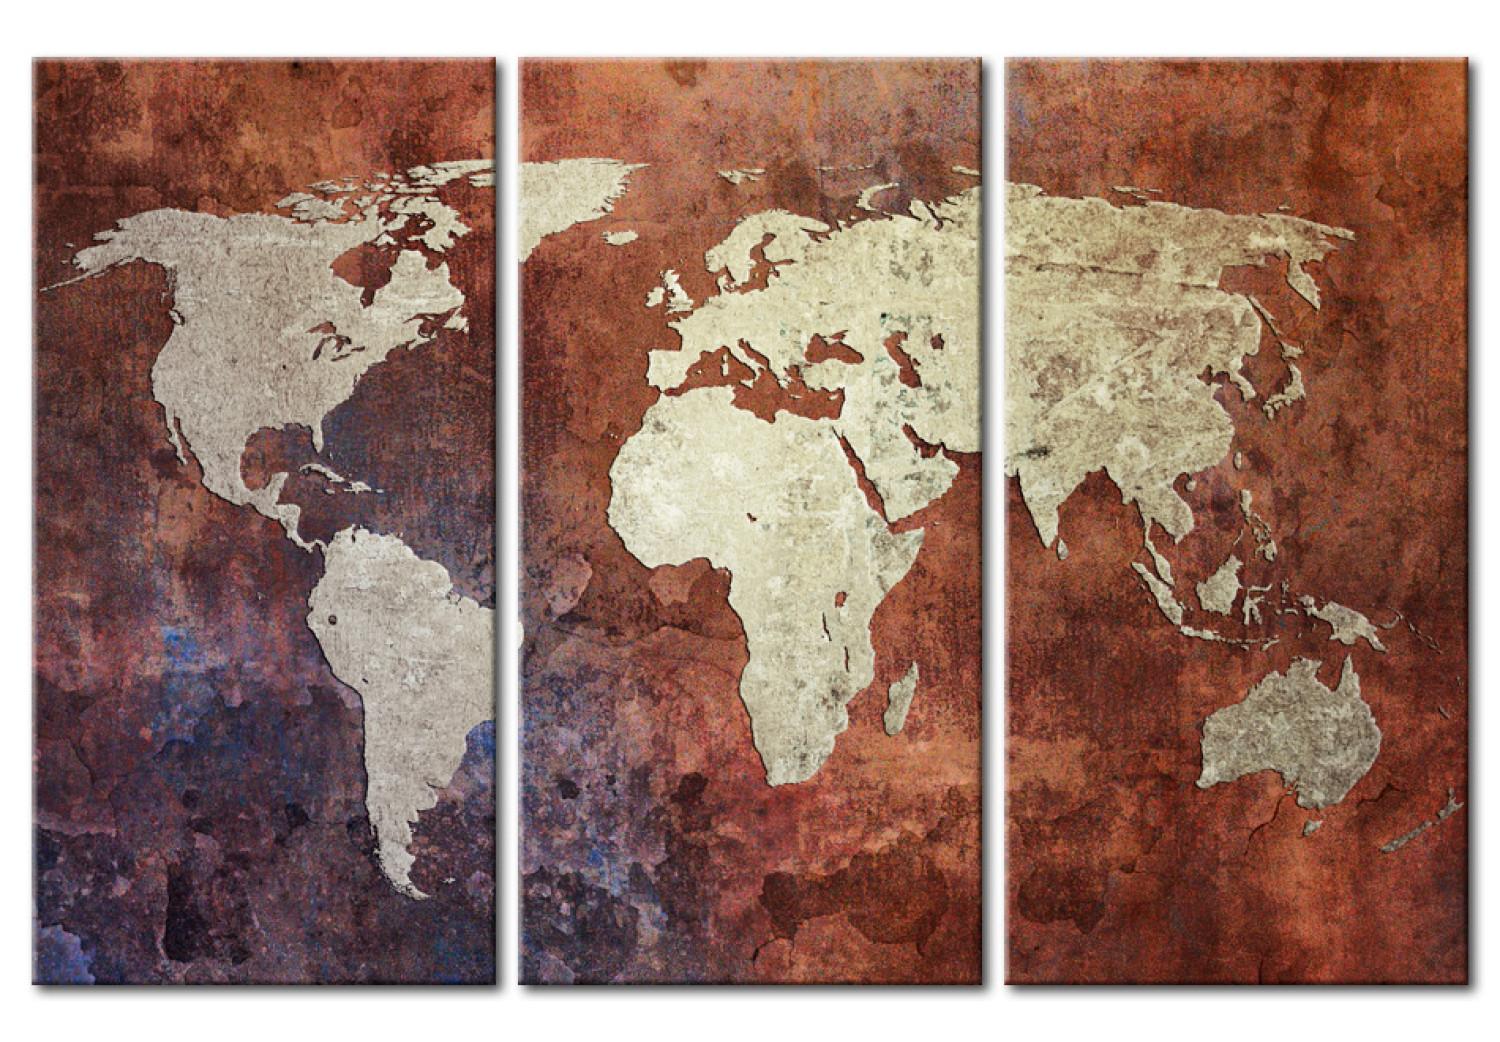 Cuadro moderno Mapa del mundo color metal oxidado- tríptico